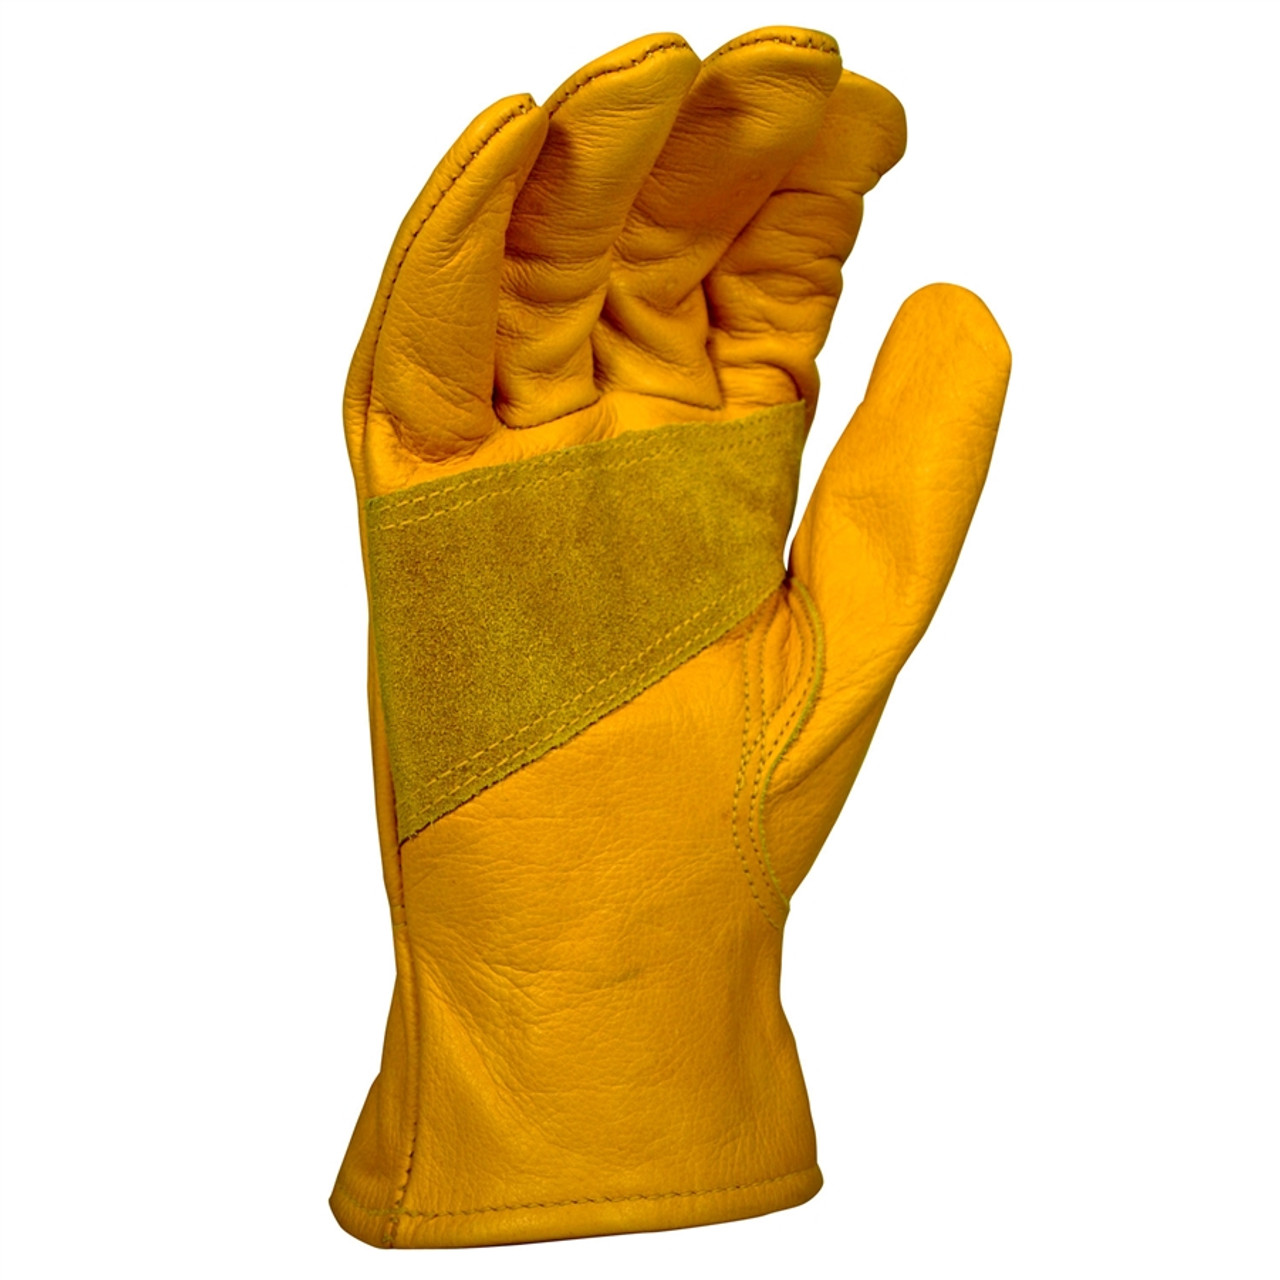 Work Gloves  Heavy Duty Work Gloves